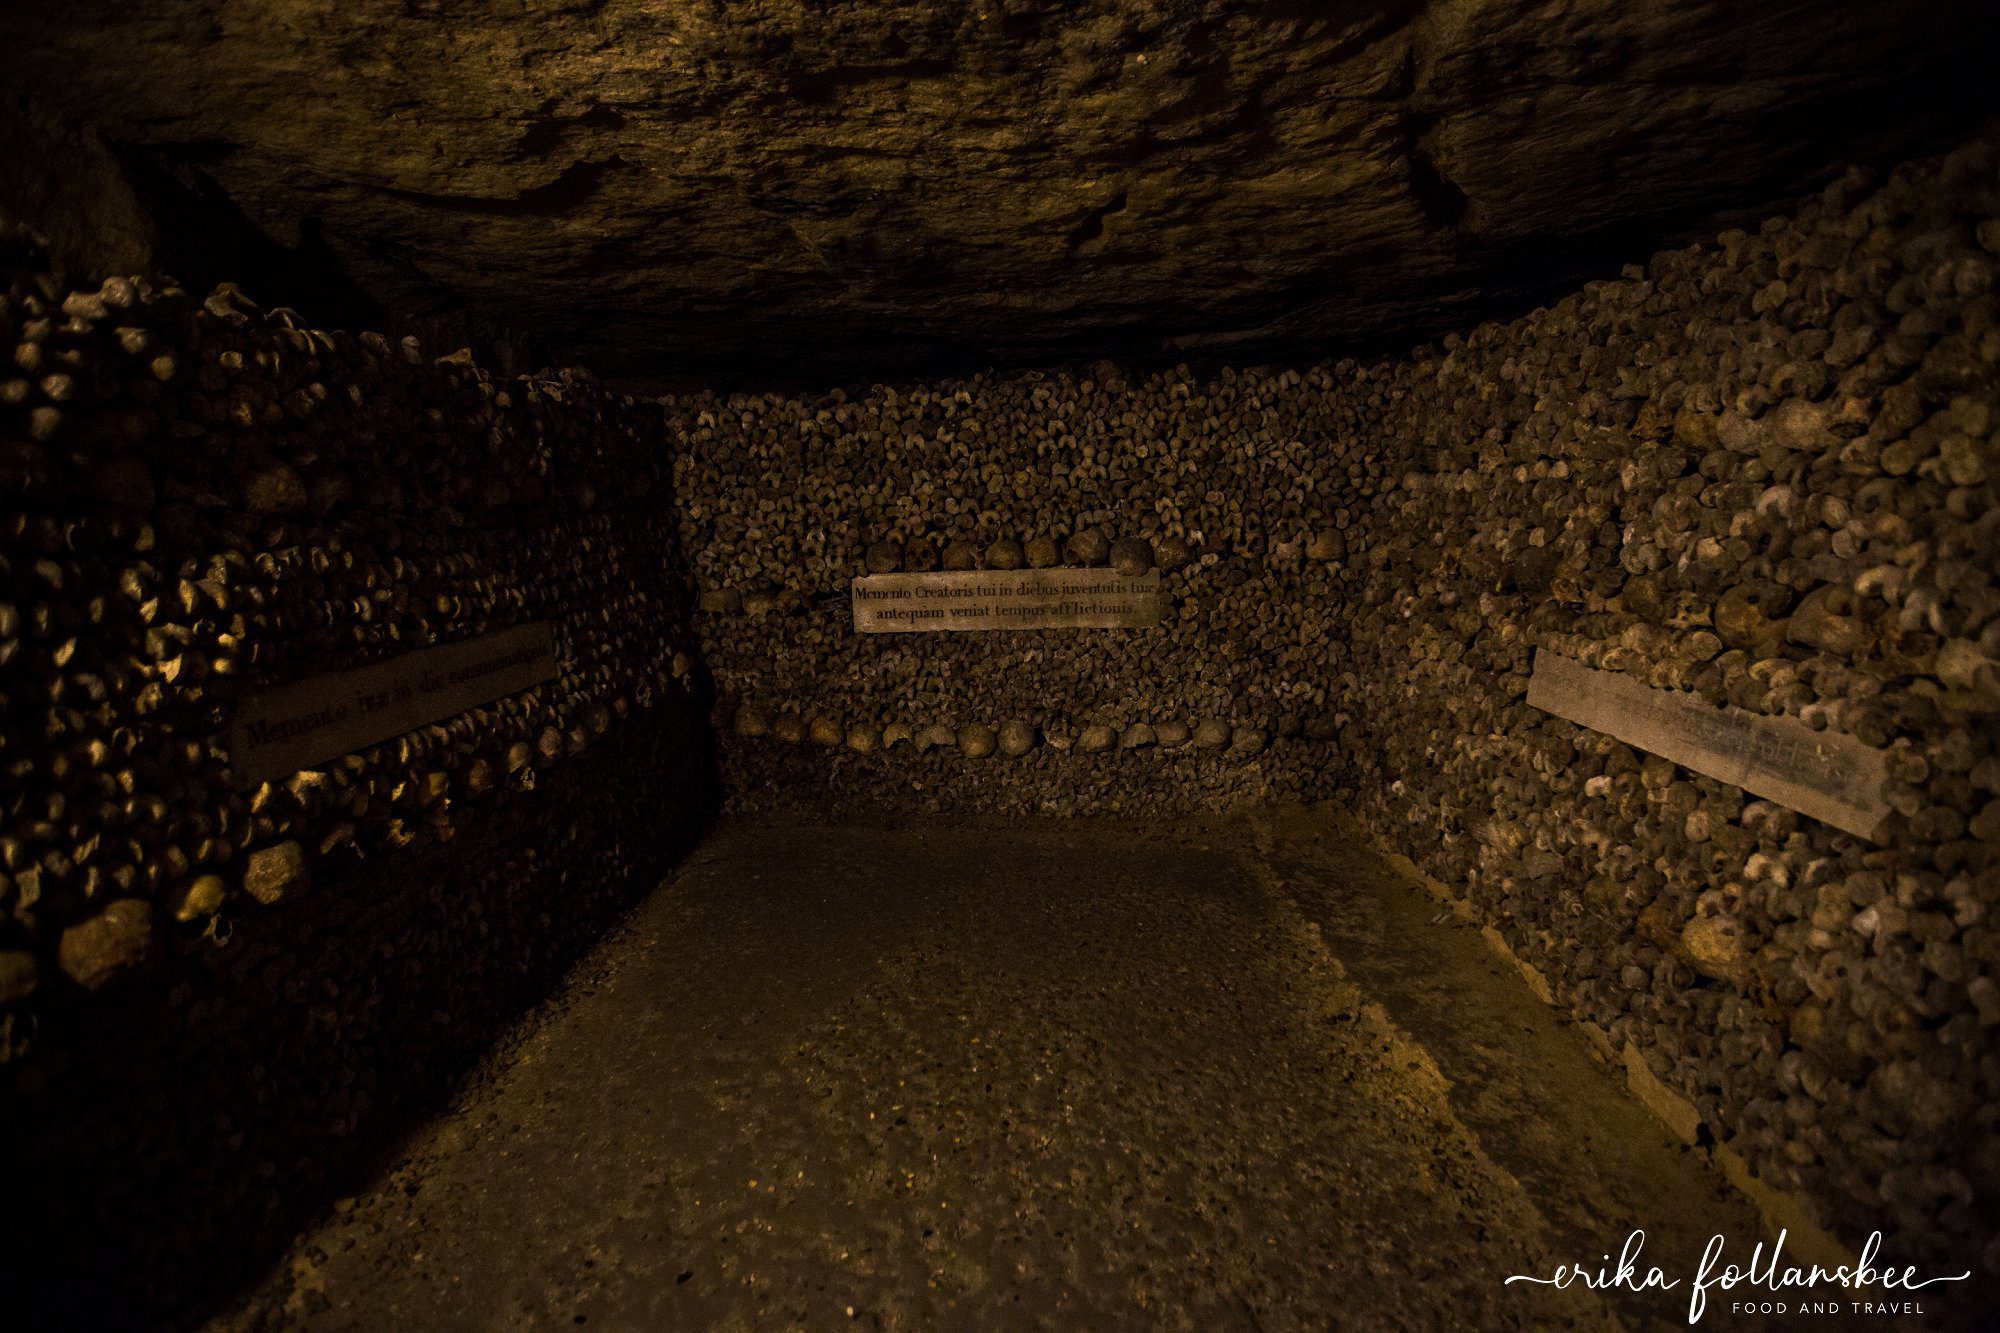 Photos of the Paris Catacombs